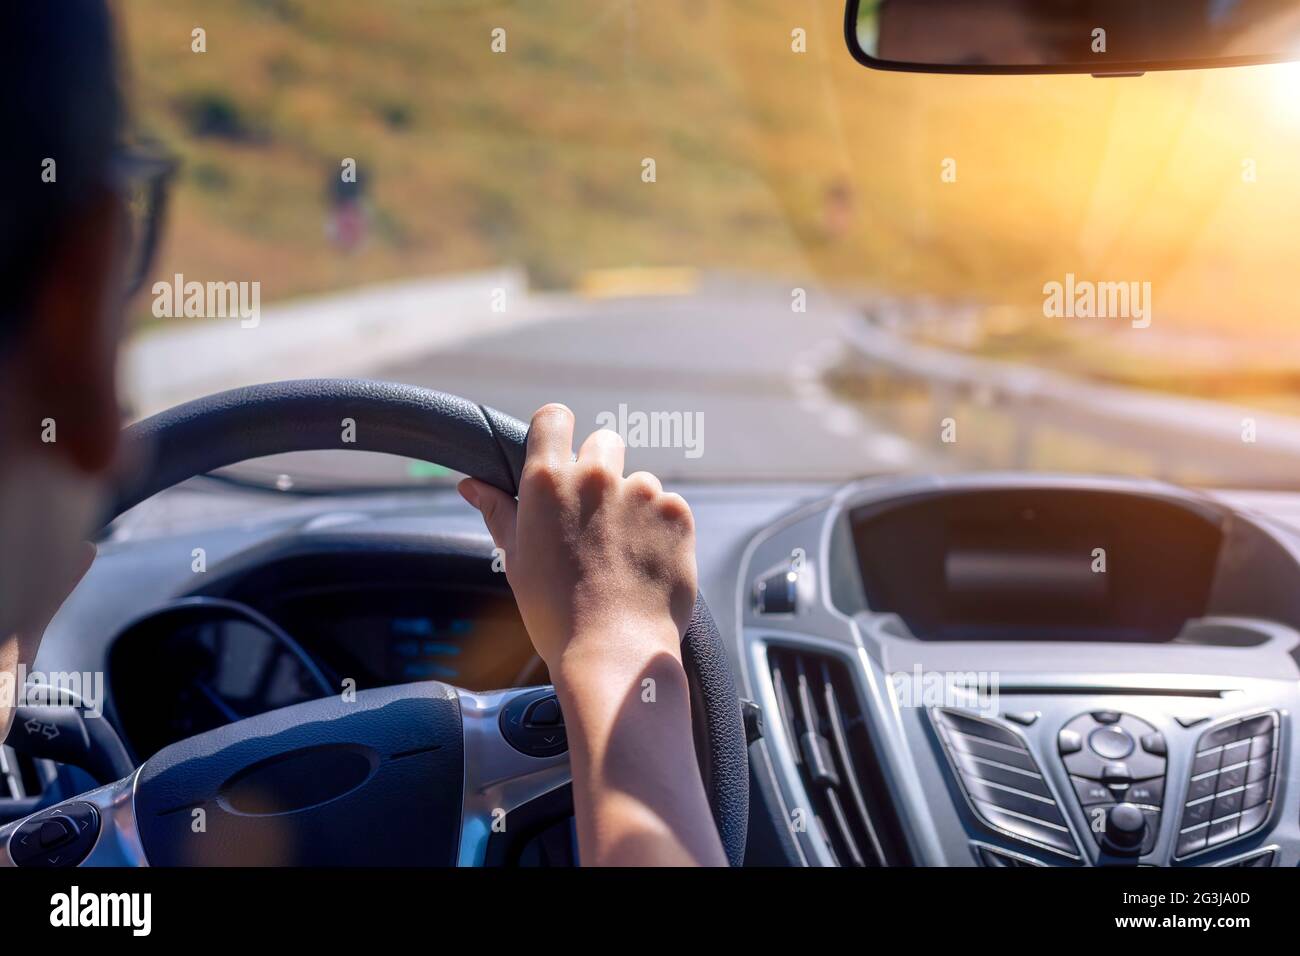 Ragazza mani sul volante di una macchina durante la guida. Sullo sfondo, il parabrezza e la strada. Mettere a fuoco sulla sua mano Foto Stock